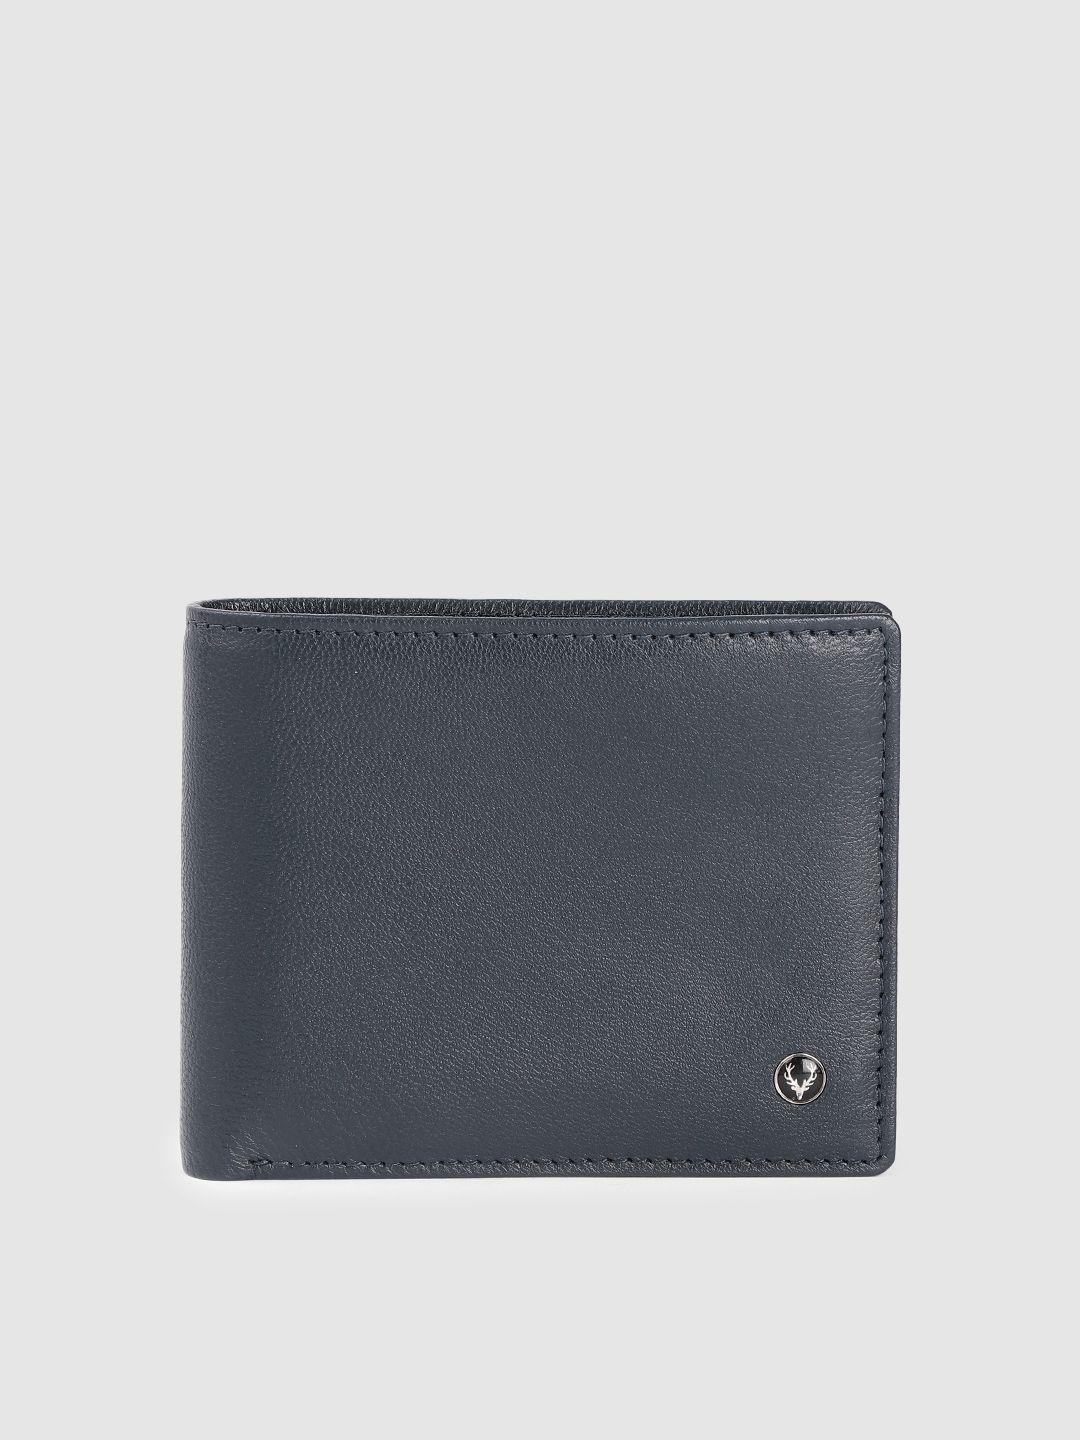 allen solly men leather two fold wallet